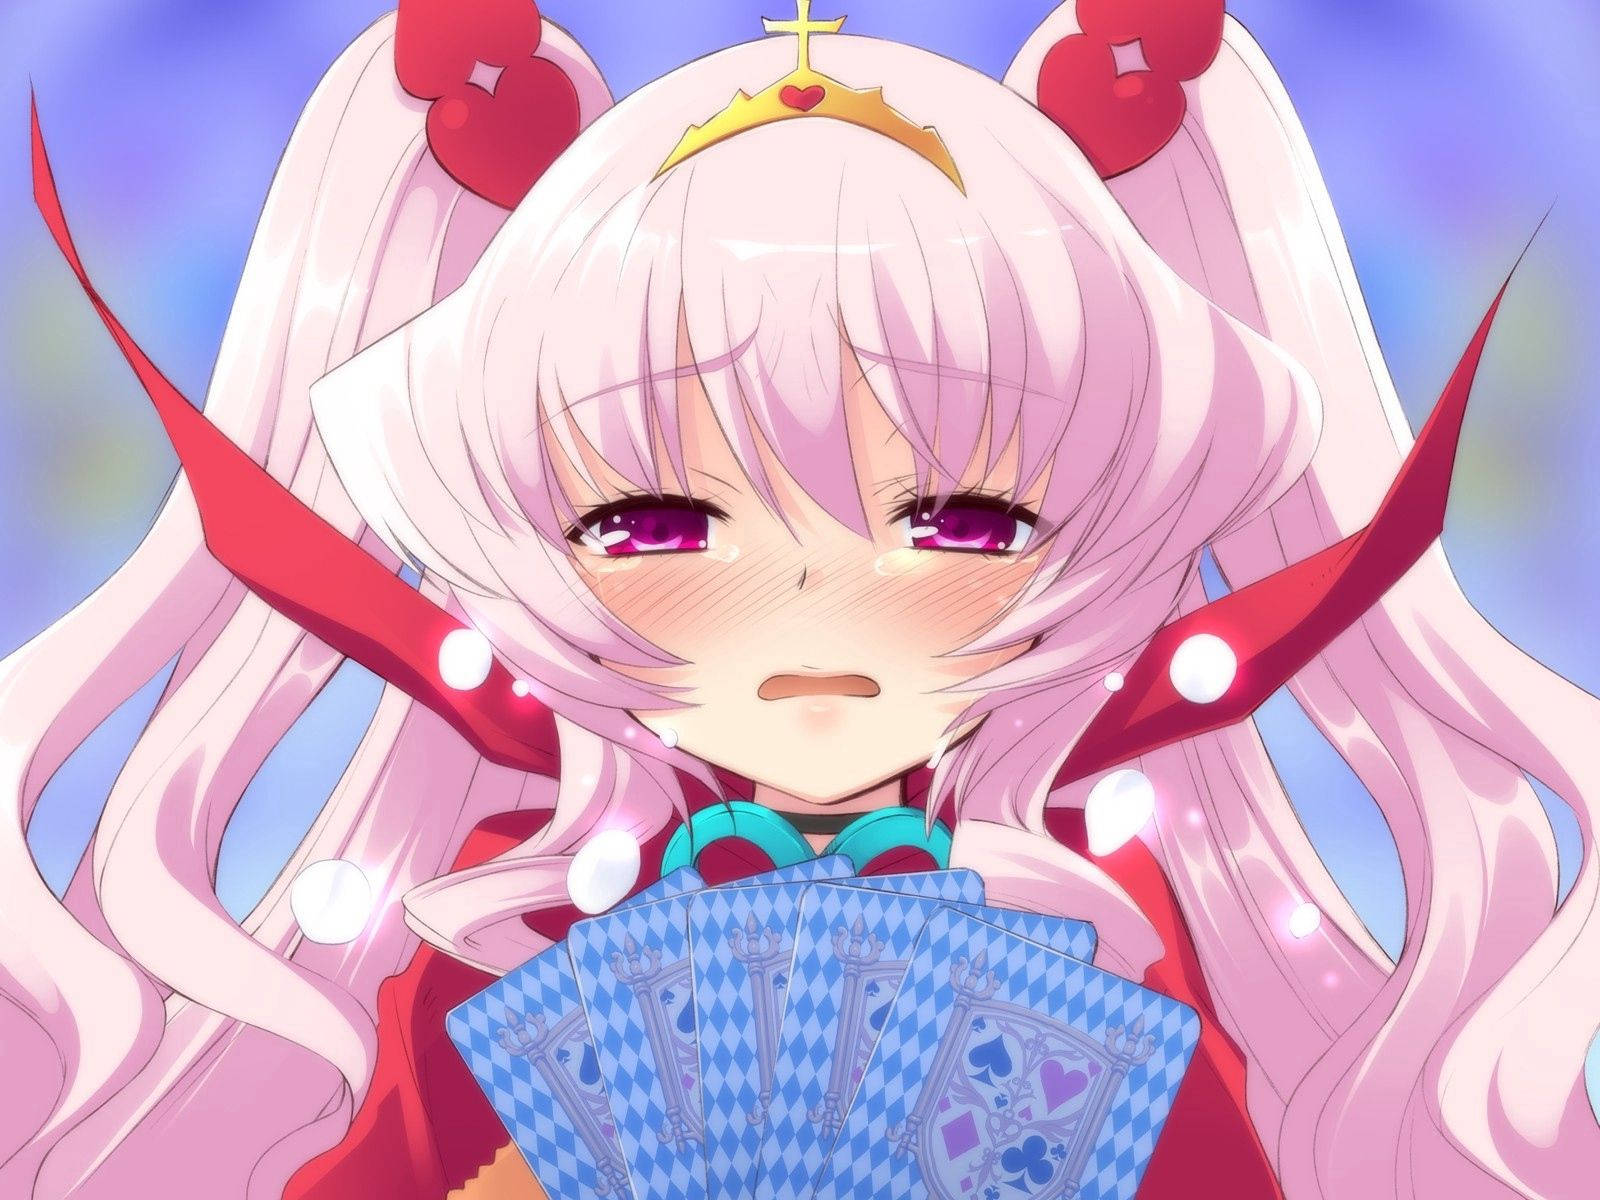 Sad Anime Girl Gambler Wallpaper